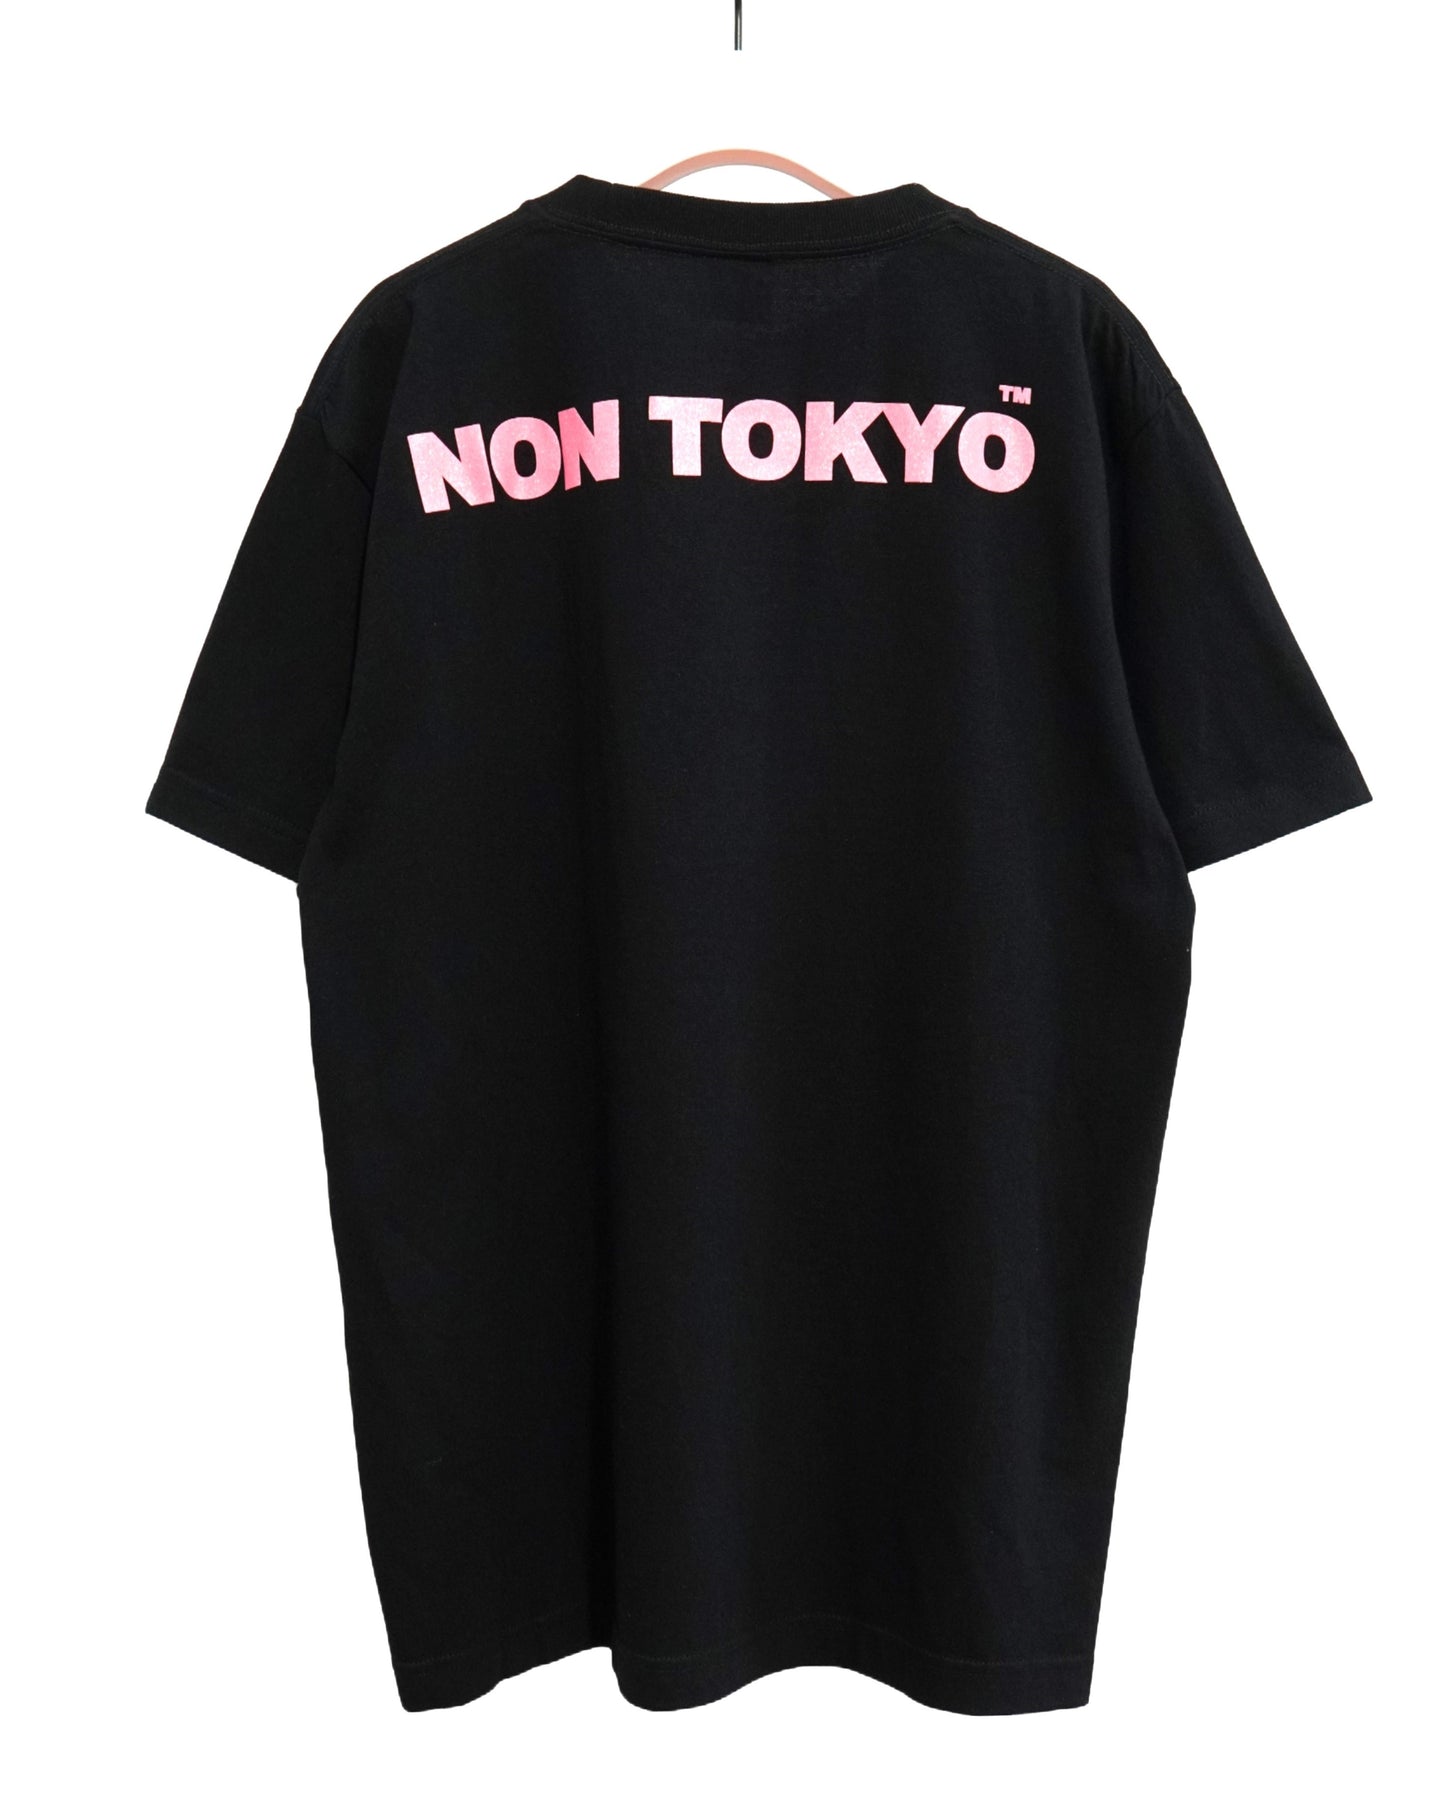 NON TOKYO /  PRINT T-SHIRT (BFF / BLACK) / 〈ノントーキョー〉プリントTシャツ (BFF / ブラック)